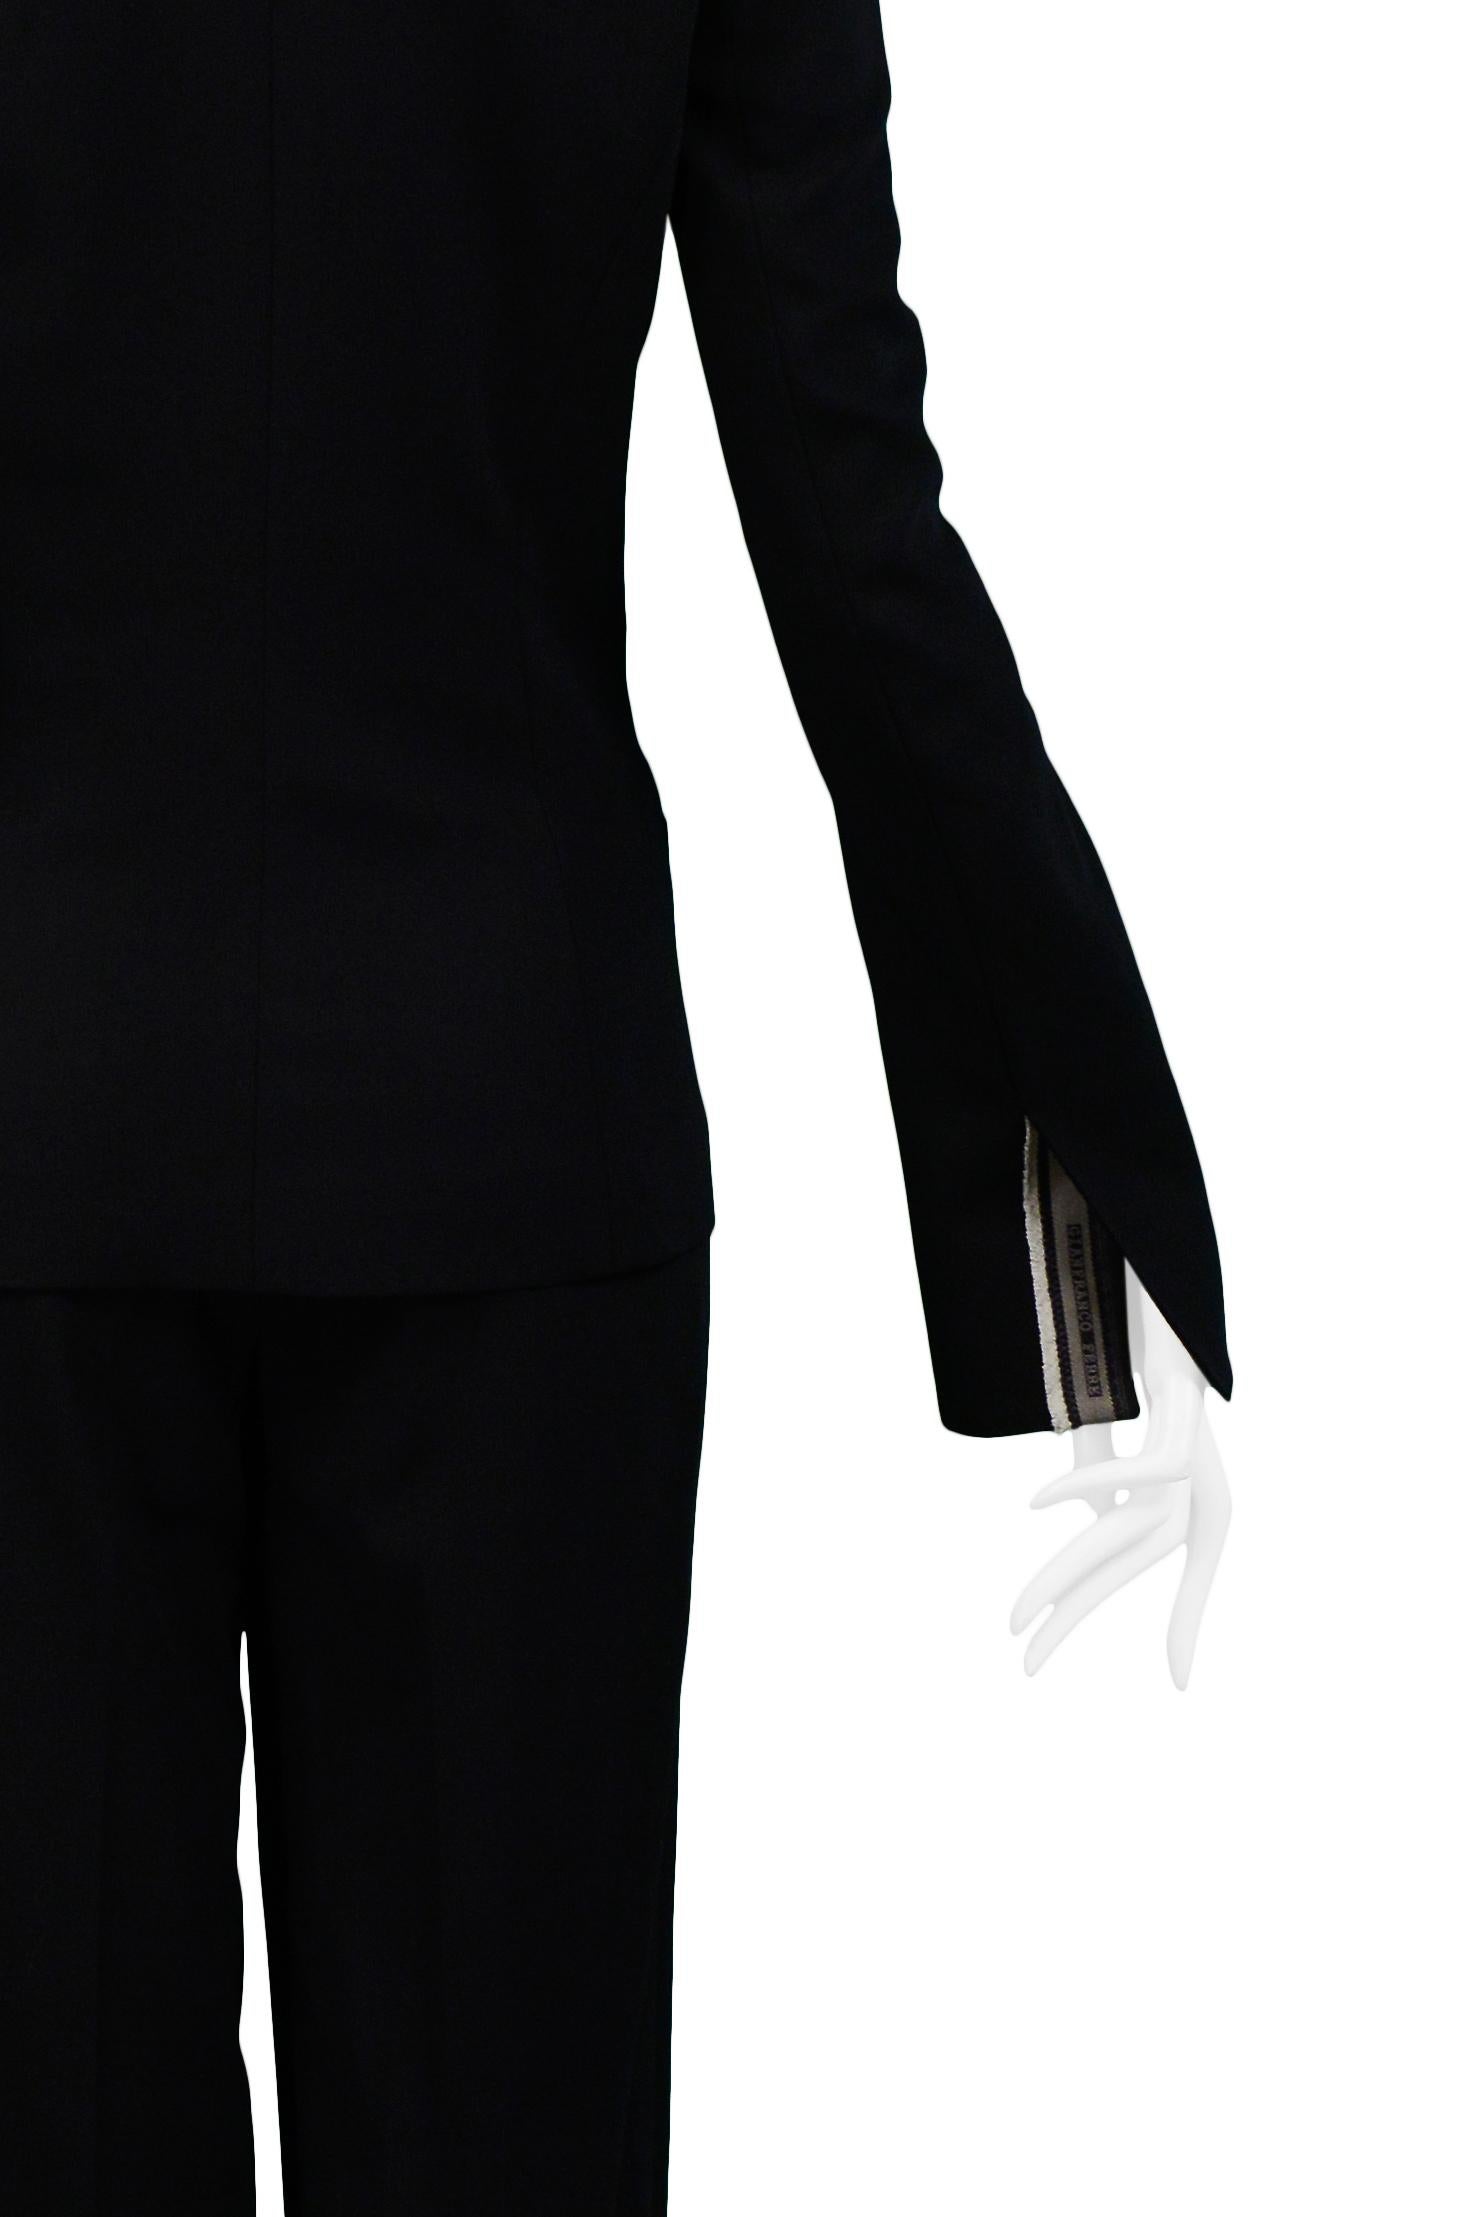 Gianfranco FerrecClassic Black Tailored Suit For Sale 2